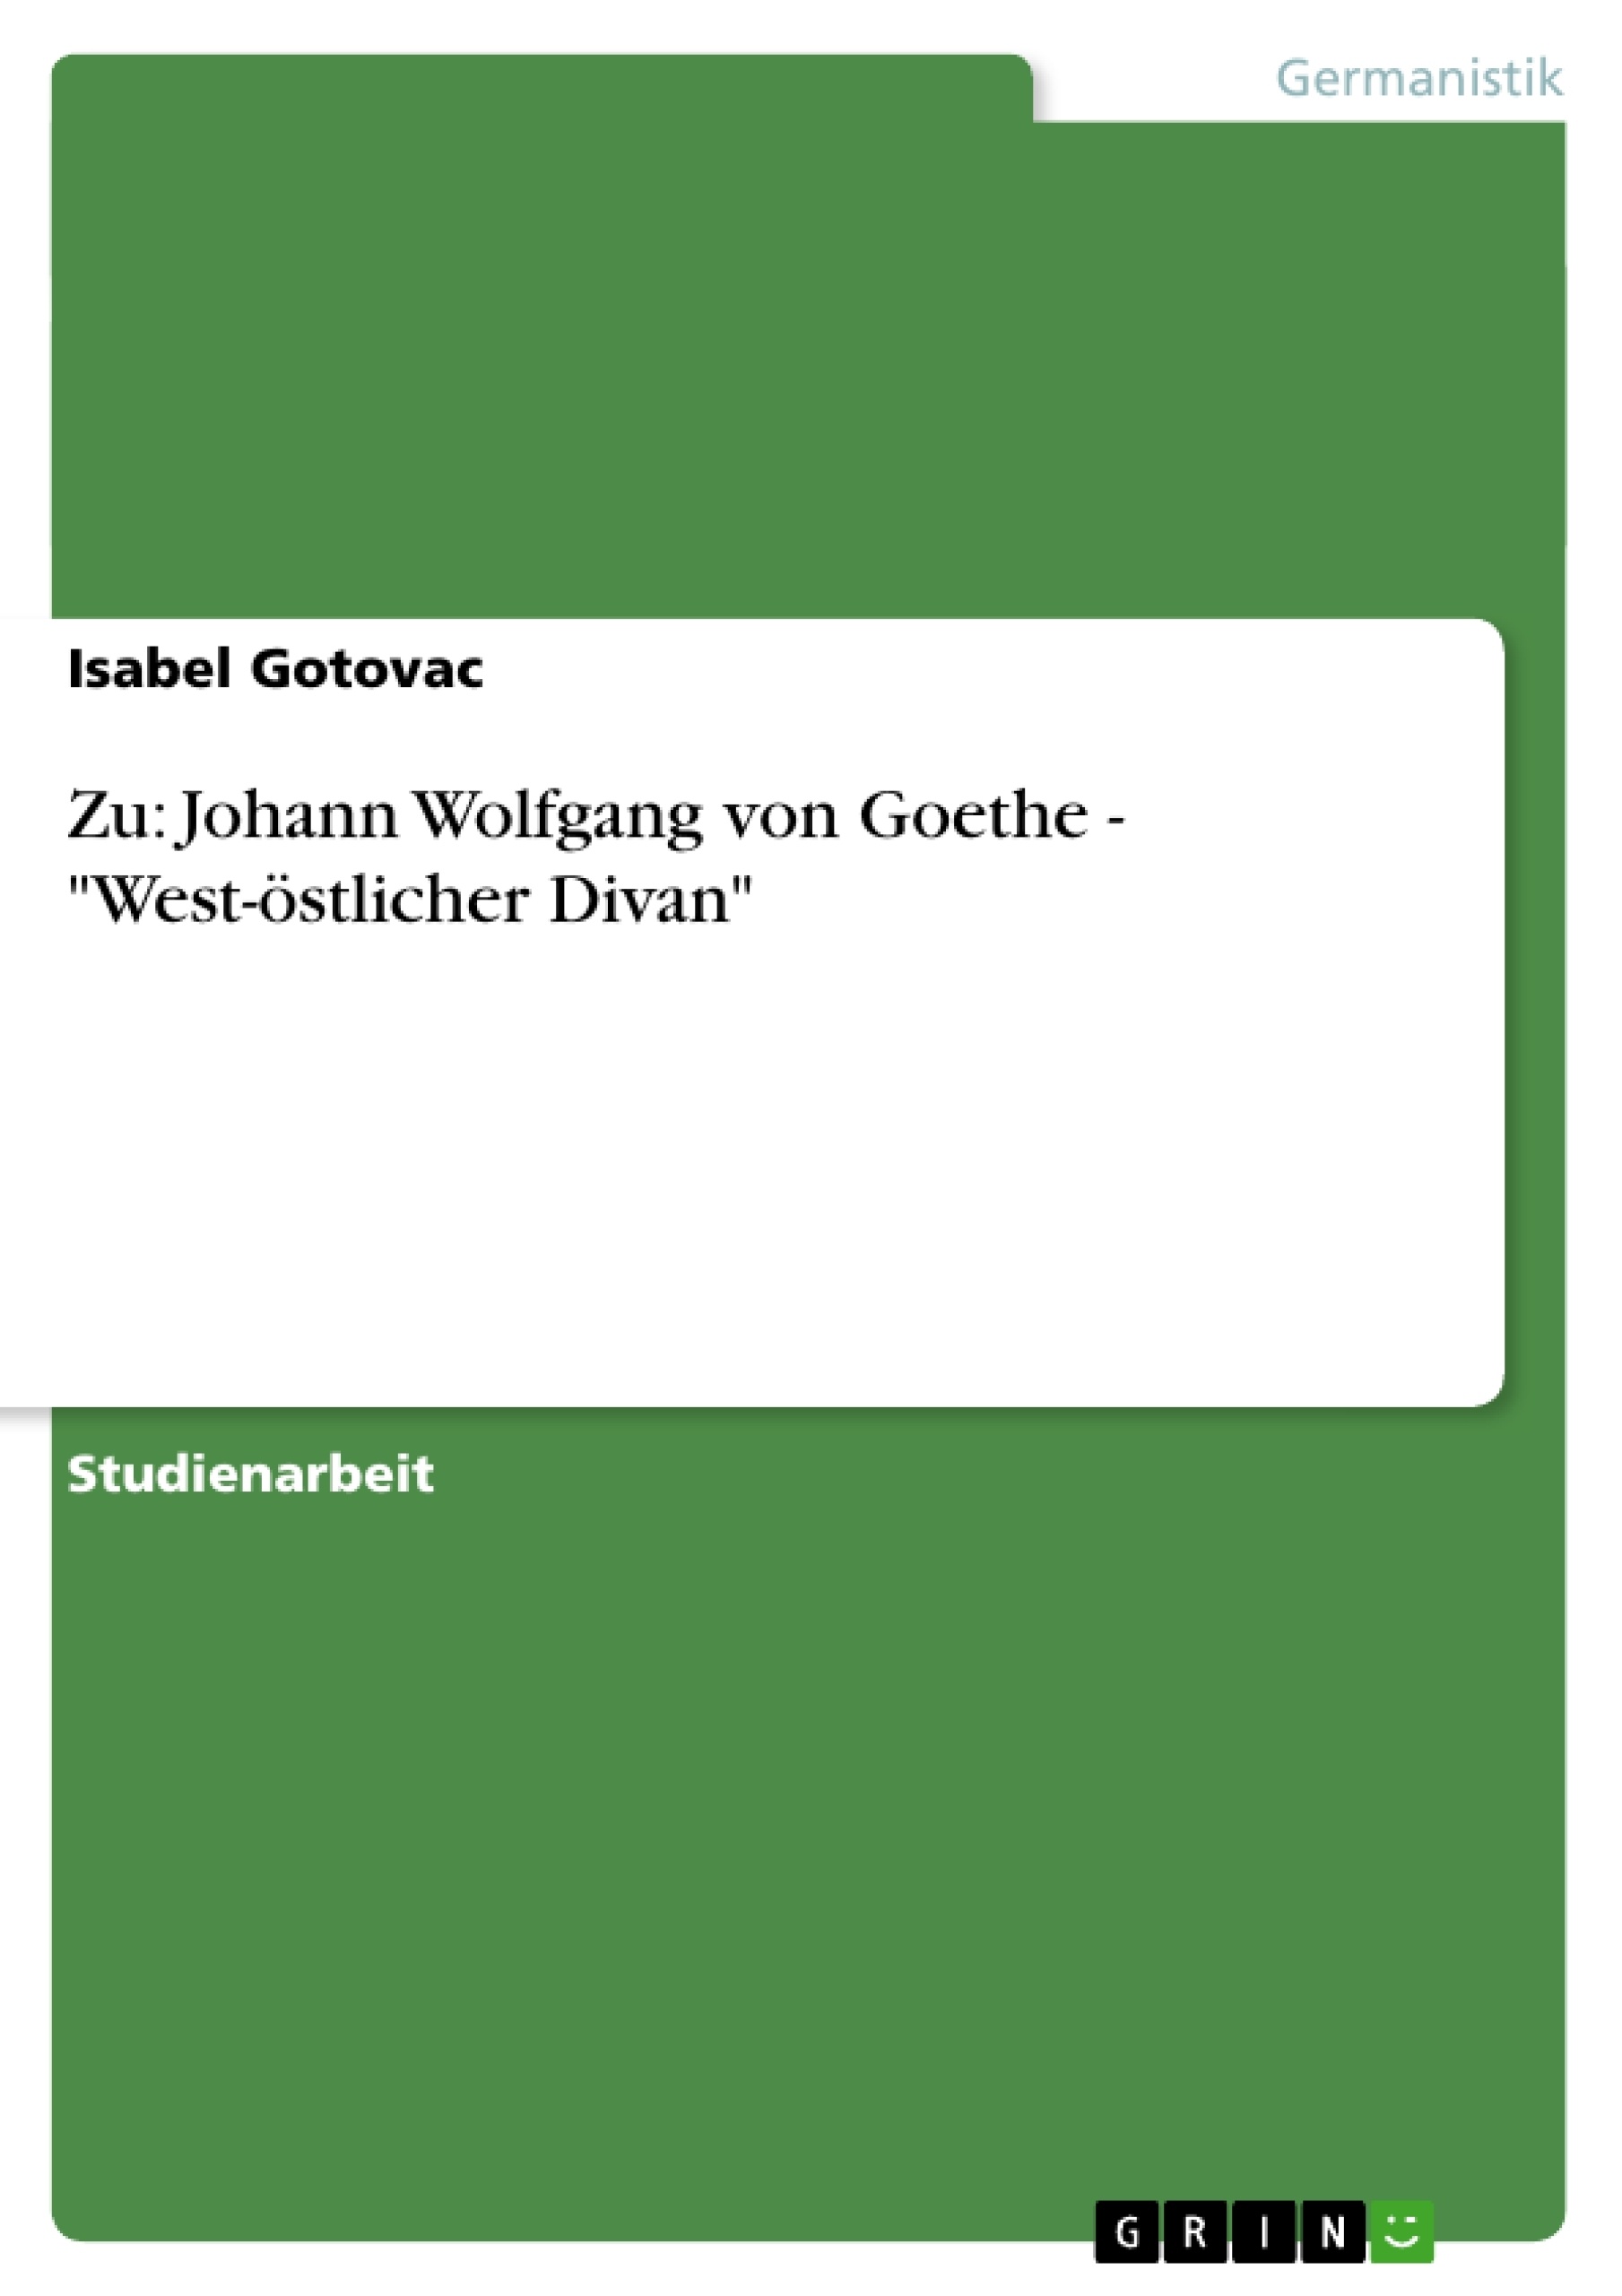 Título: Zu: Johann Wolfgang von Goethe - "West-östlicher Divan"